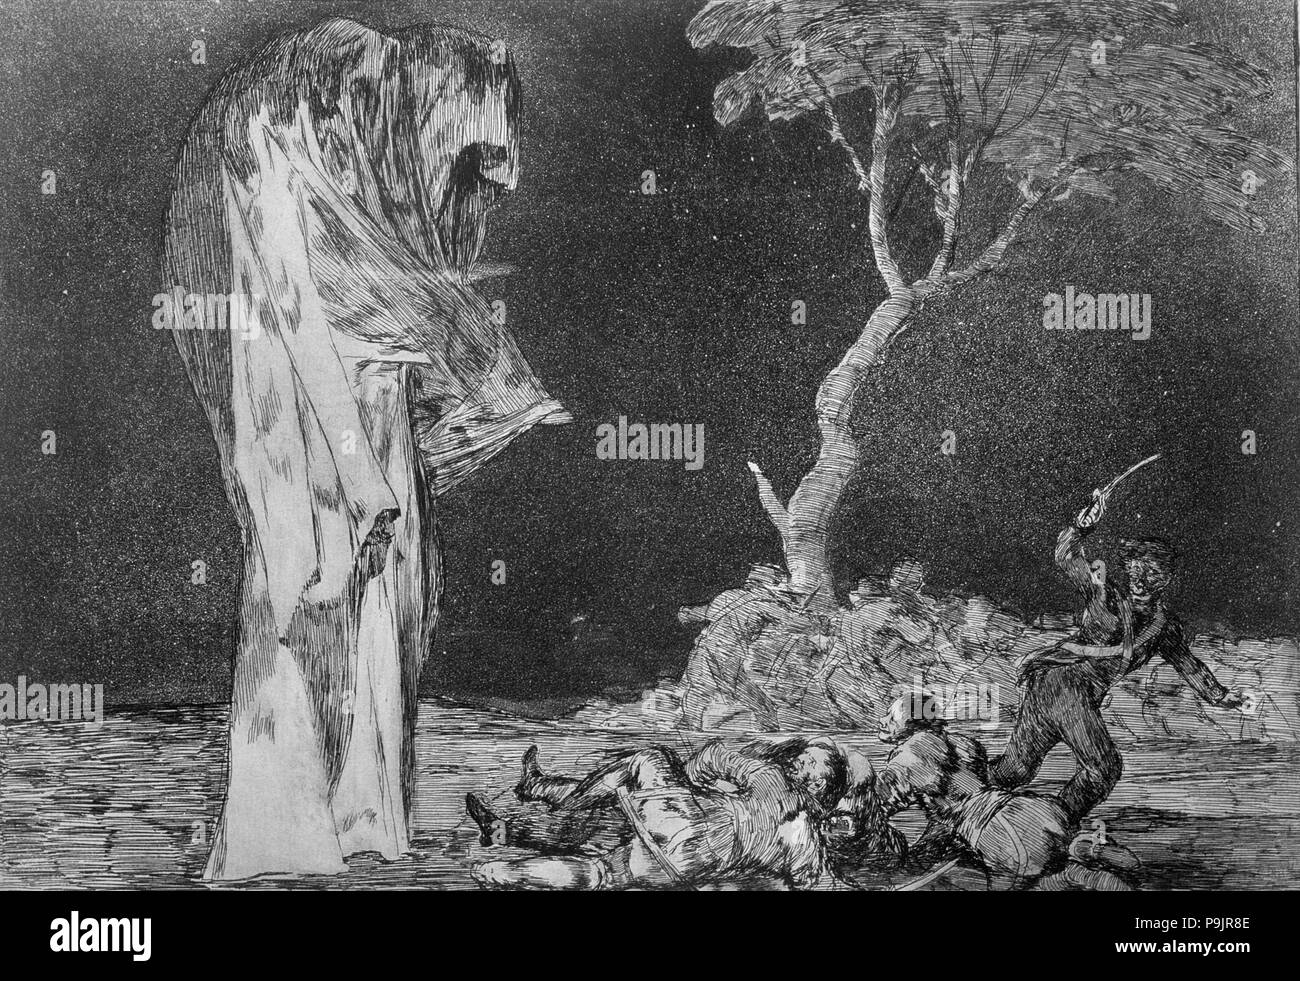 Les proverbes ou les folies, série de gravures de Francisco de Goya, planche 2 : 'Disparate mied de… Banque D'Images